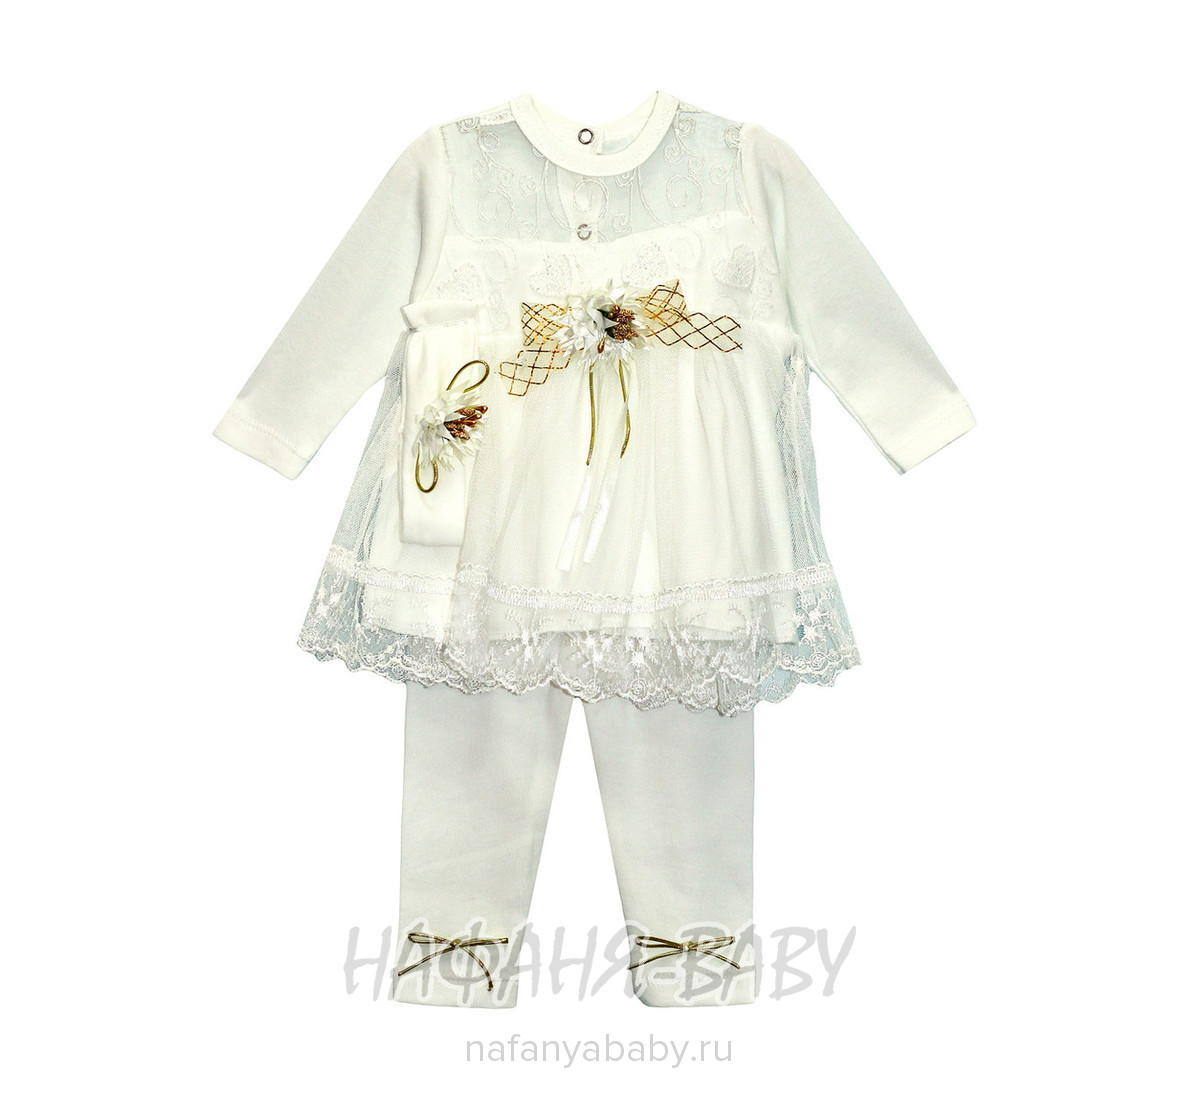 Детский костюм для новорожденных FINDIK, купить в интернет магазине Нафаня. арт: 61019, цвет кремовый